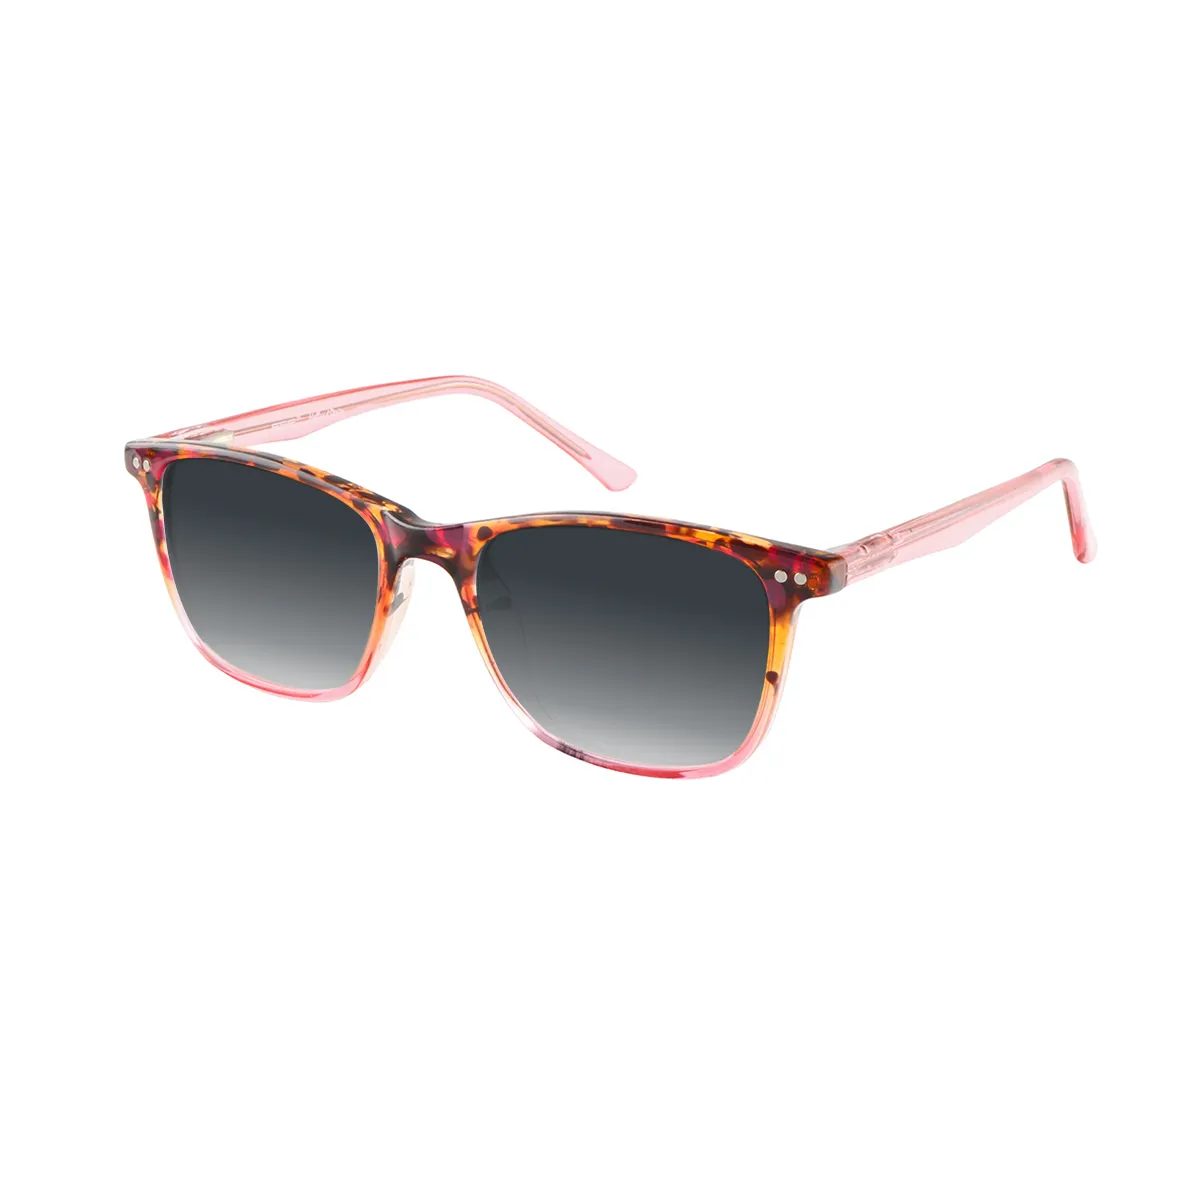 Zapata - Rectangle Demi Sunglasses for Men & Women